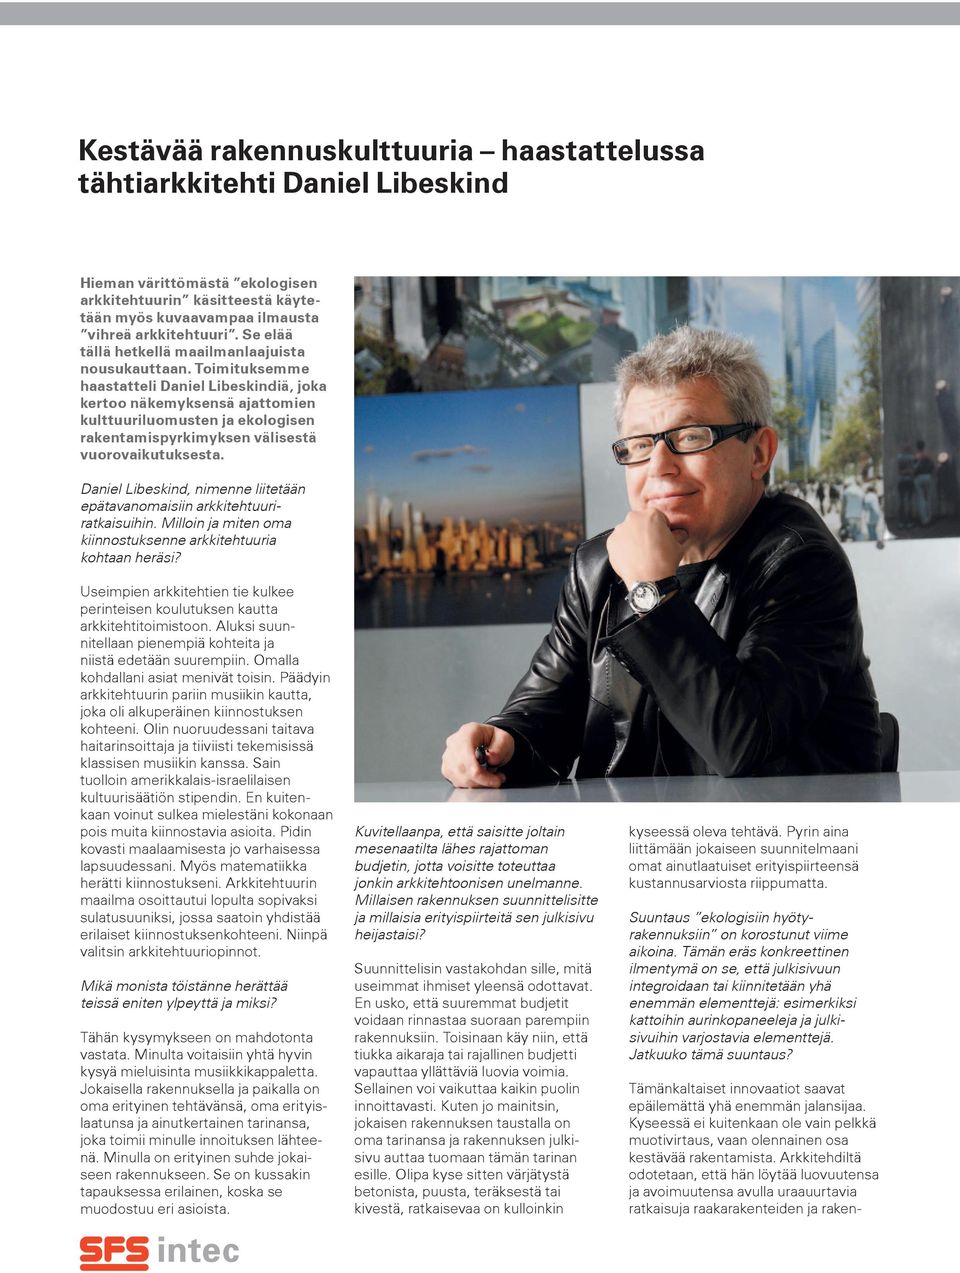 Toimituksemme haastatteli Daniel Libeskindiä, joka kertoo näkemyksensä ajattomien kulttuuriluomusten ja ekologisen rakentamispyrkimyksen välisestä vuorovaikutuksesta.